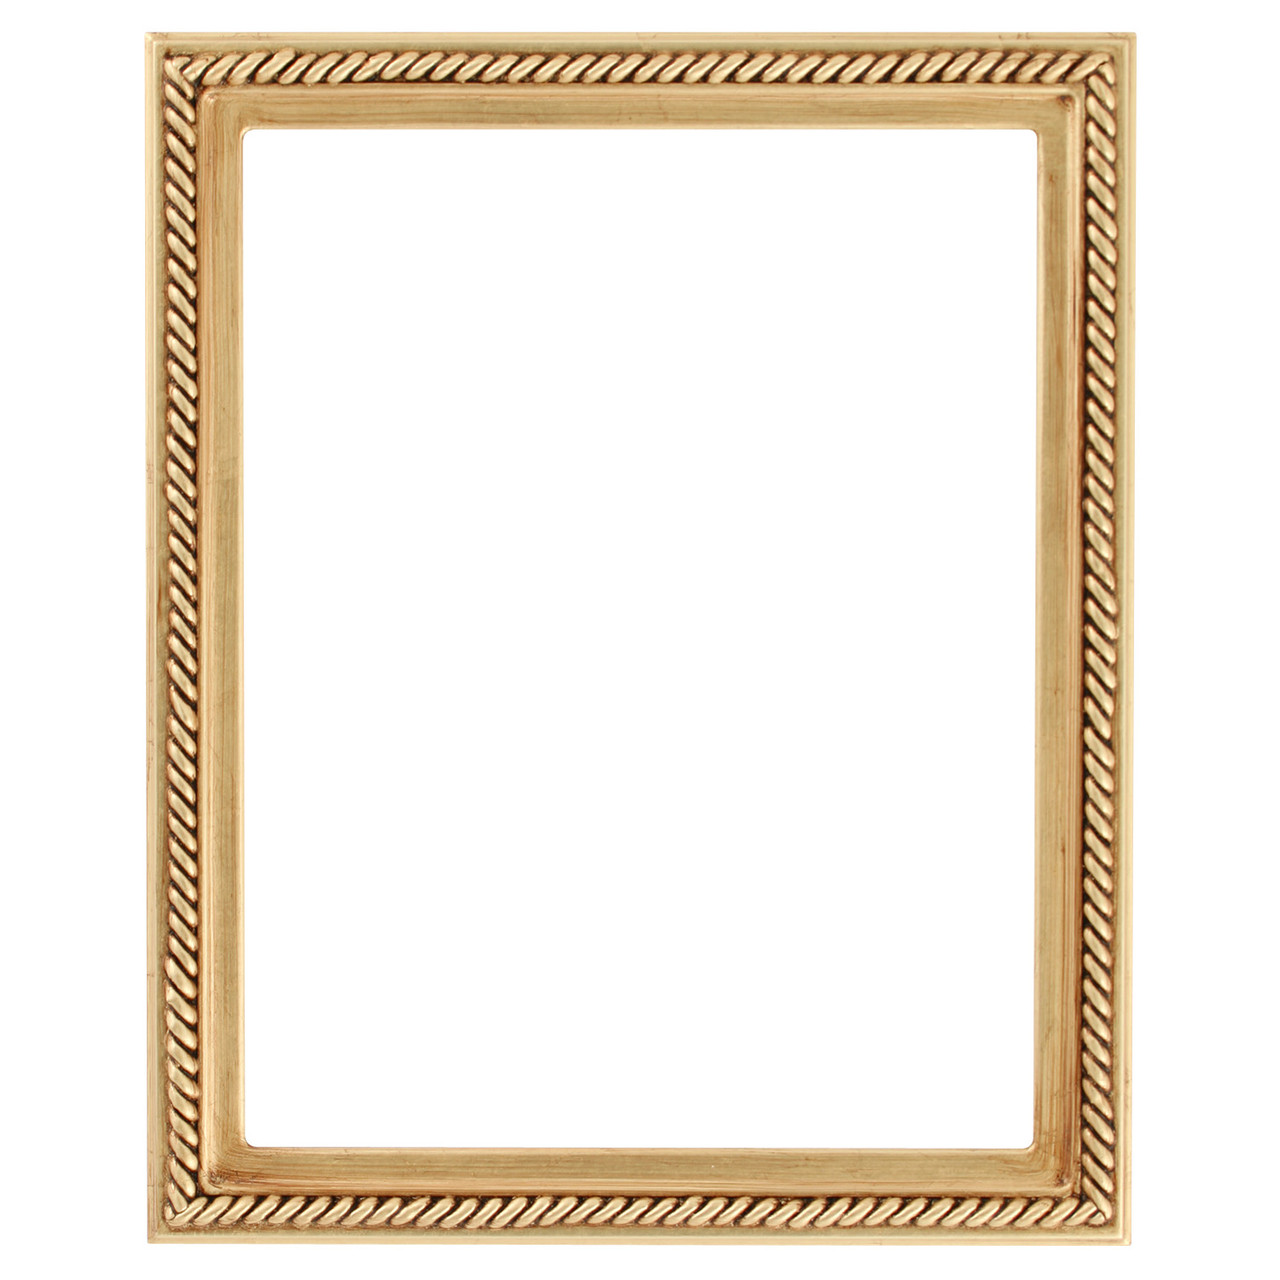 modern gold frame